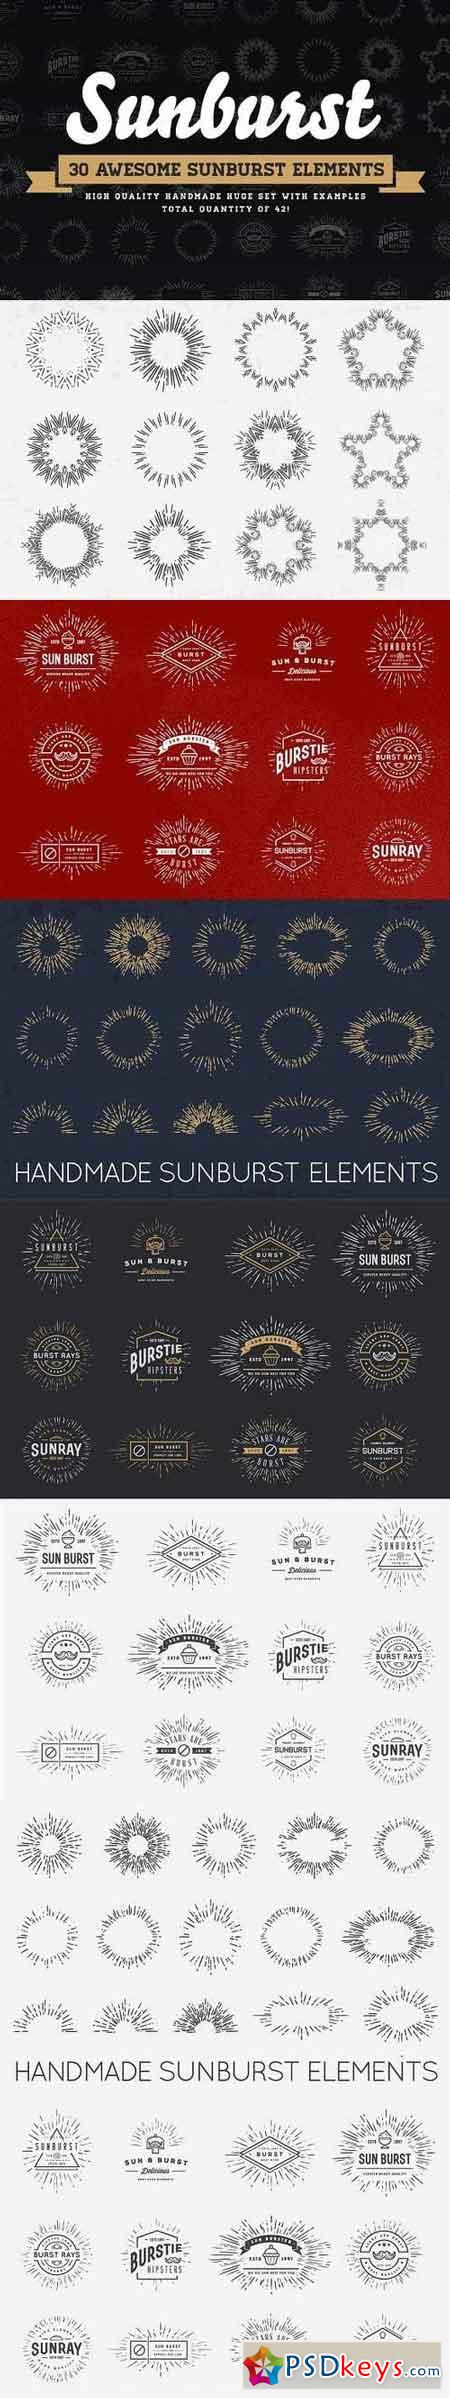 Awesome Sunburst Elements 1285683